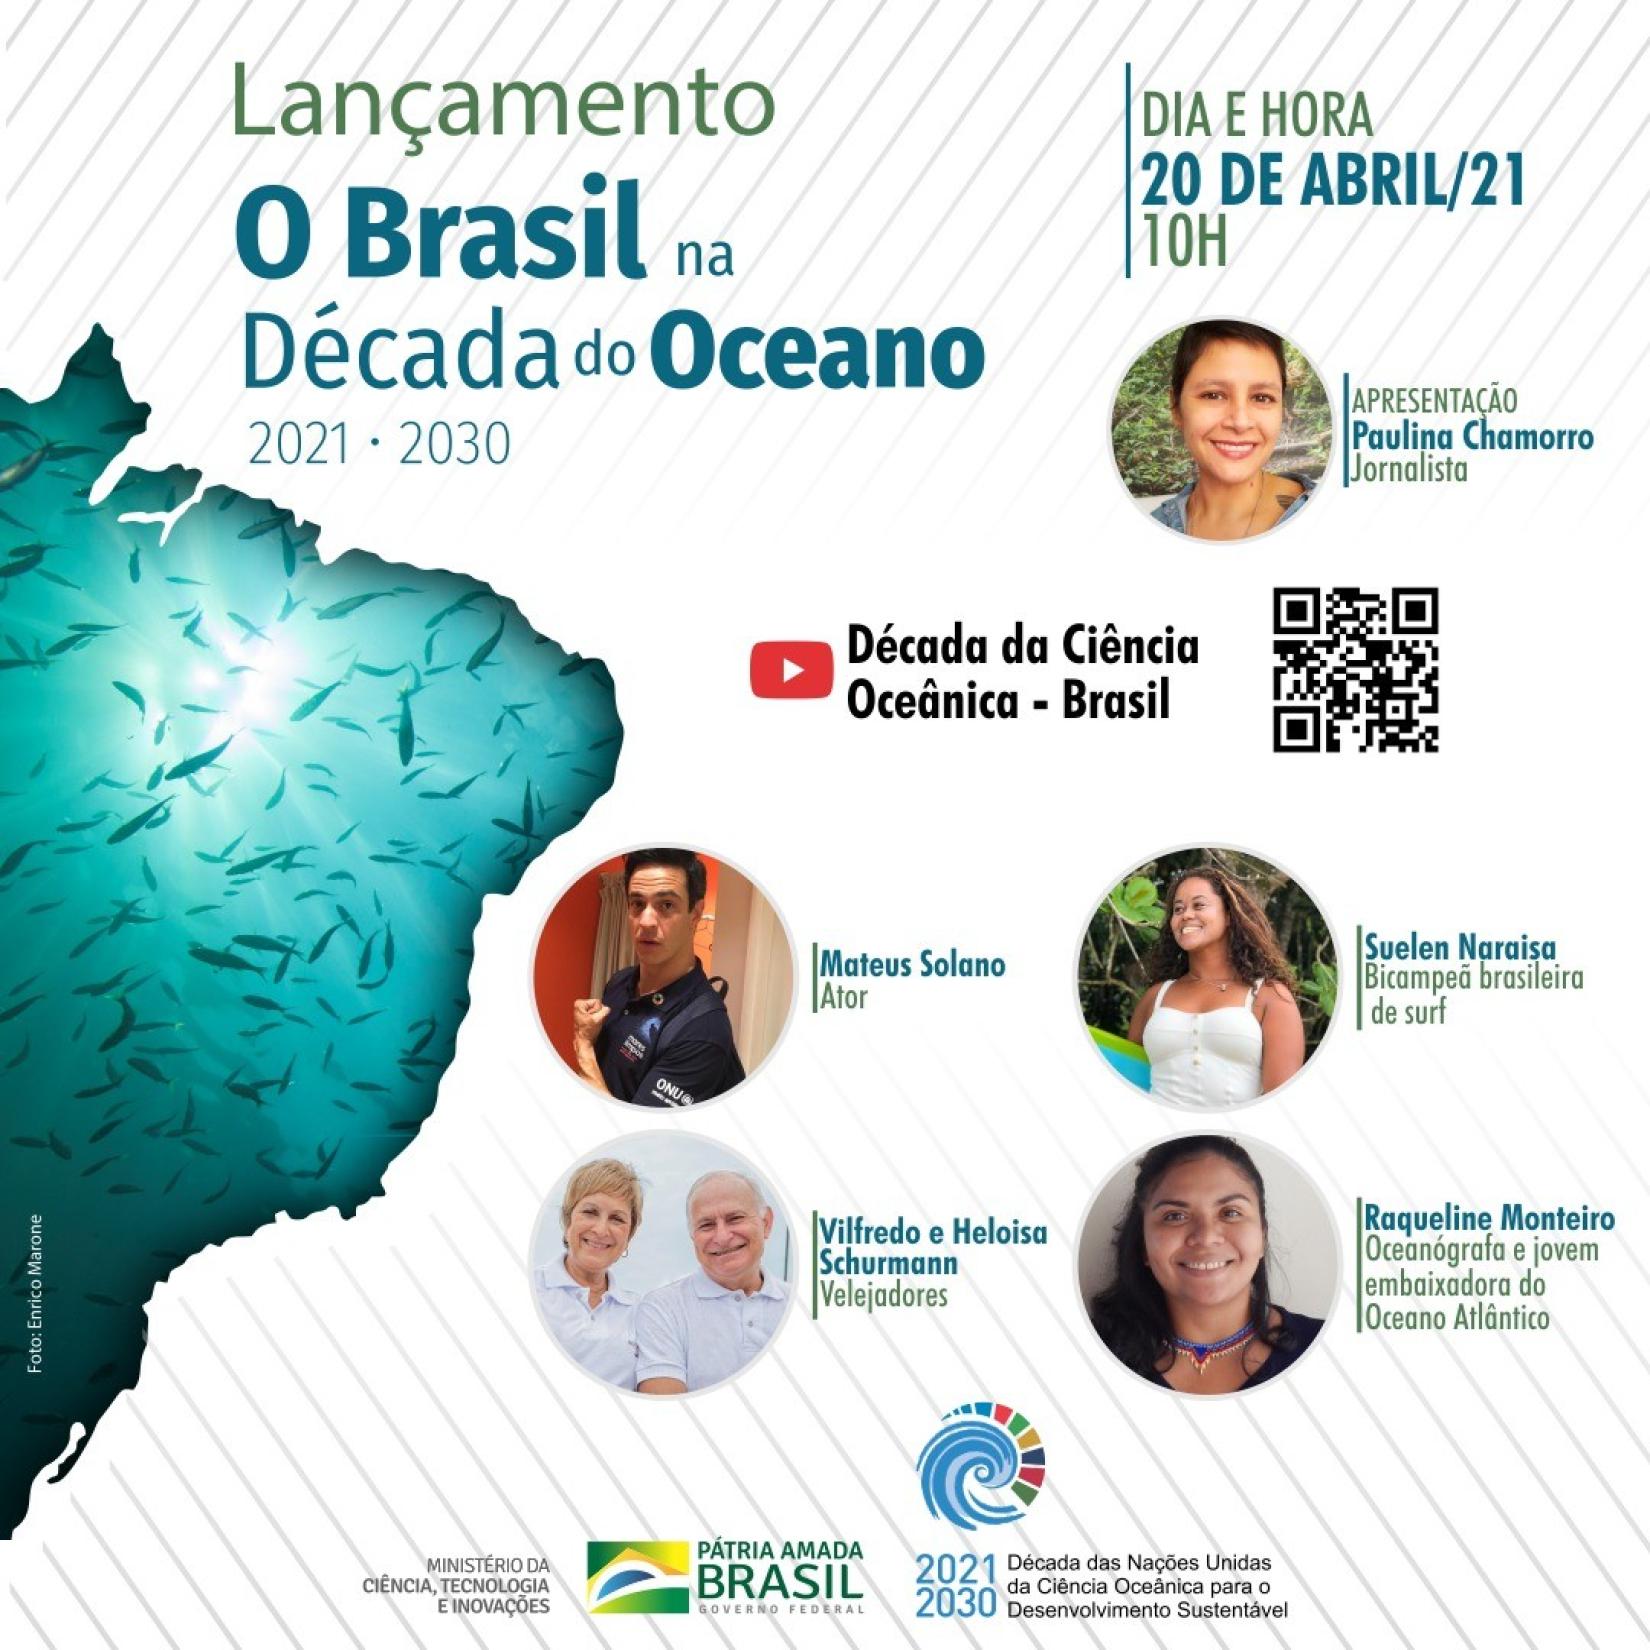 Eventos online vão reunir a UNESCO no Brasil, MCTI e parceiros para incentivar o diálogo e a cooperação entre todos os atores na sociedade. No mundo, o oceano é responsável por 30 milhões de empregos diretos.